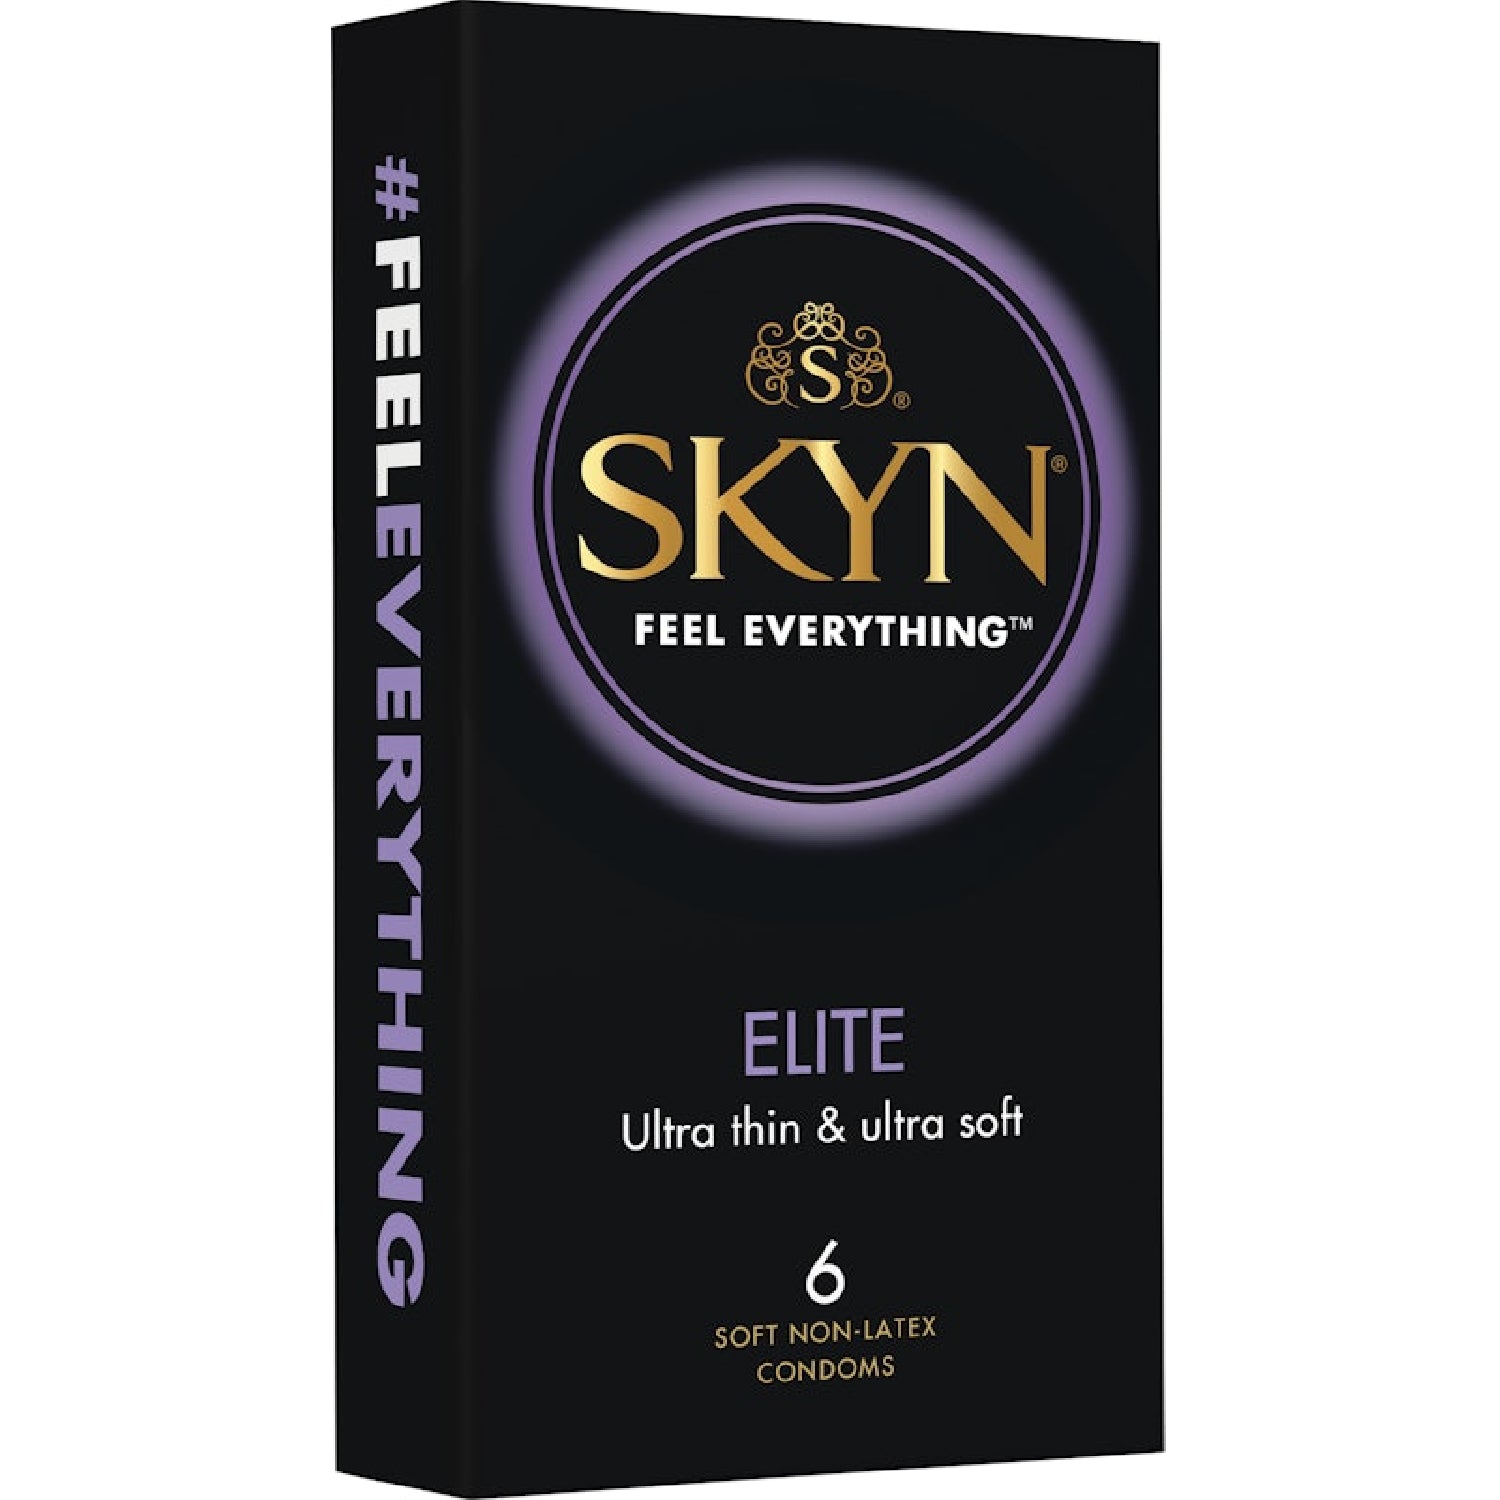 SKYN Elite Condoms 6 - K. P.